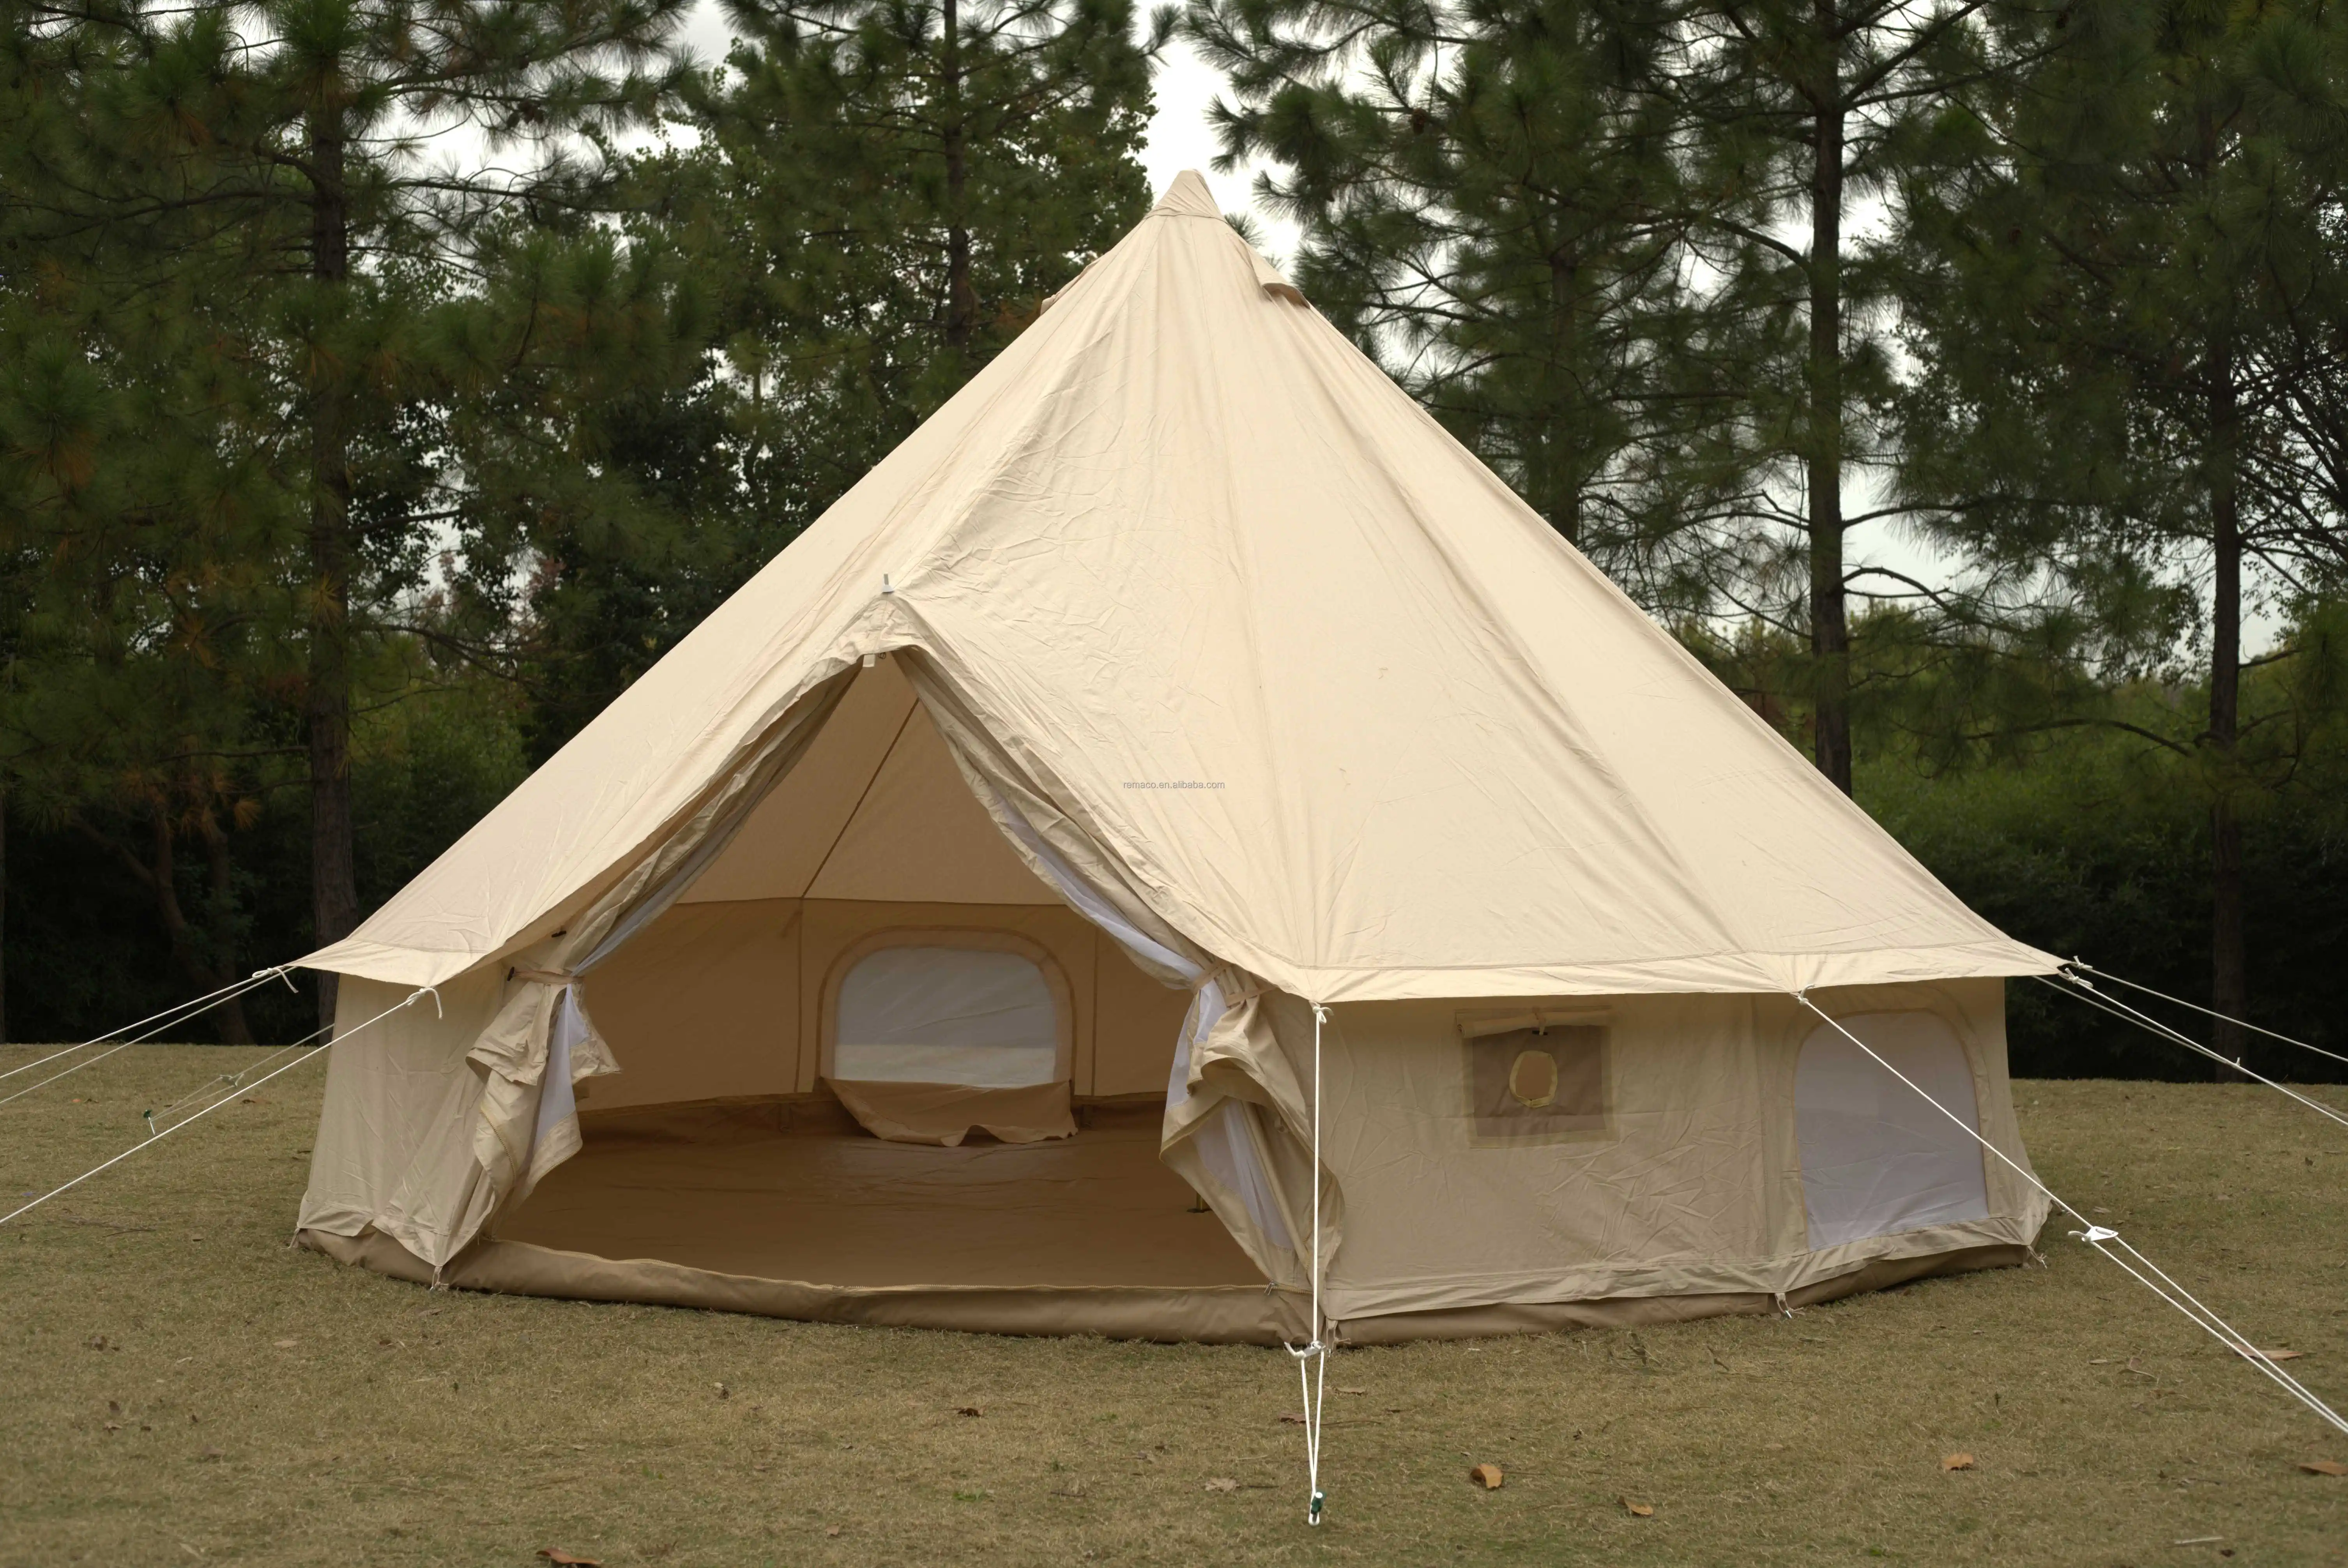 Camping Bell Tent Tienda De Campana Con Campanas De Tela Oxford Familiar La Tienda De Acampar Glamping Yurt Zelt